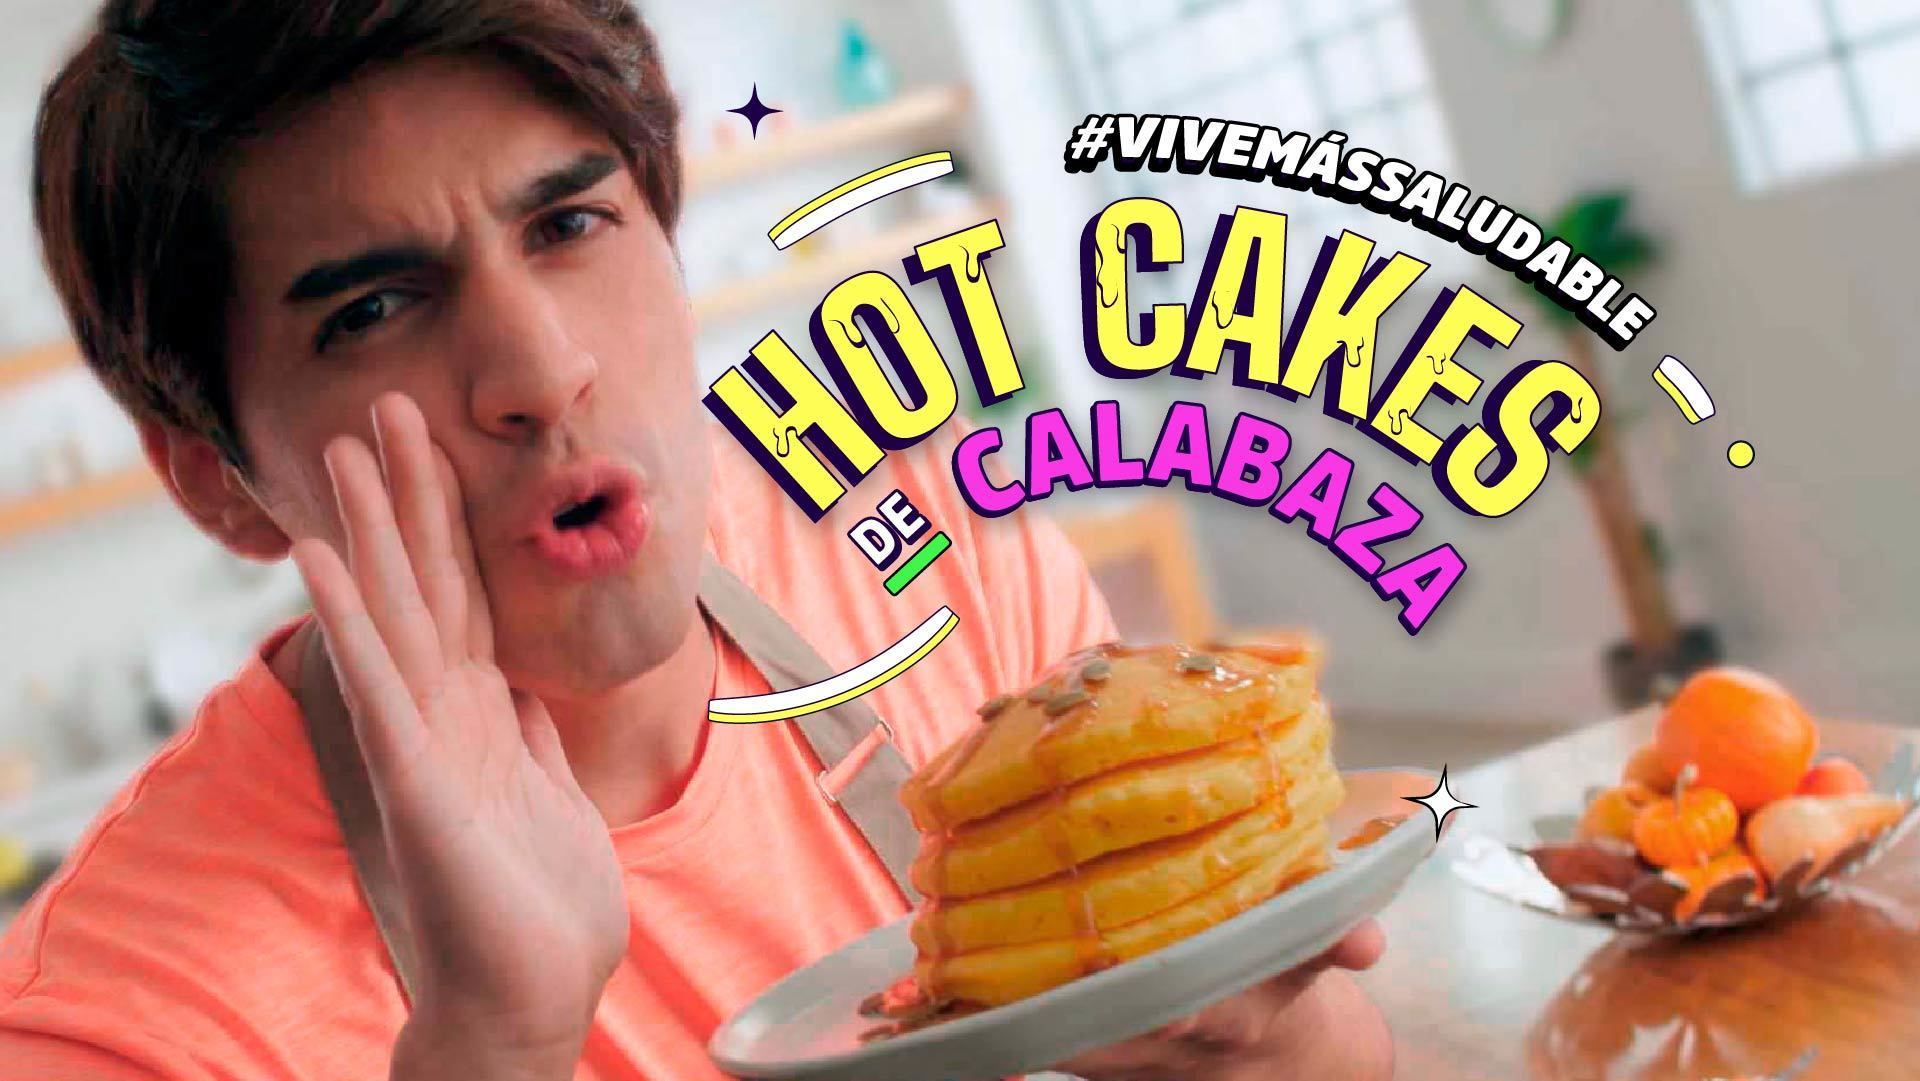 Hot Cakes de Calabaza | Vive Más Saludable